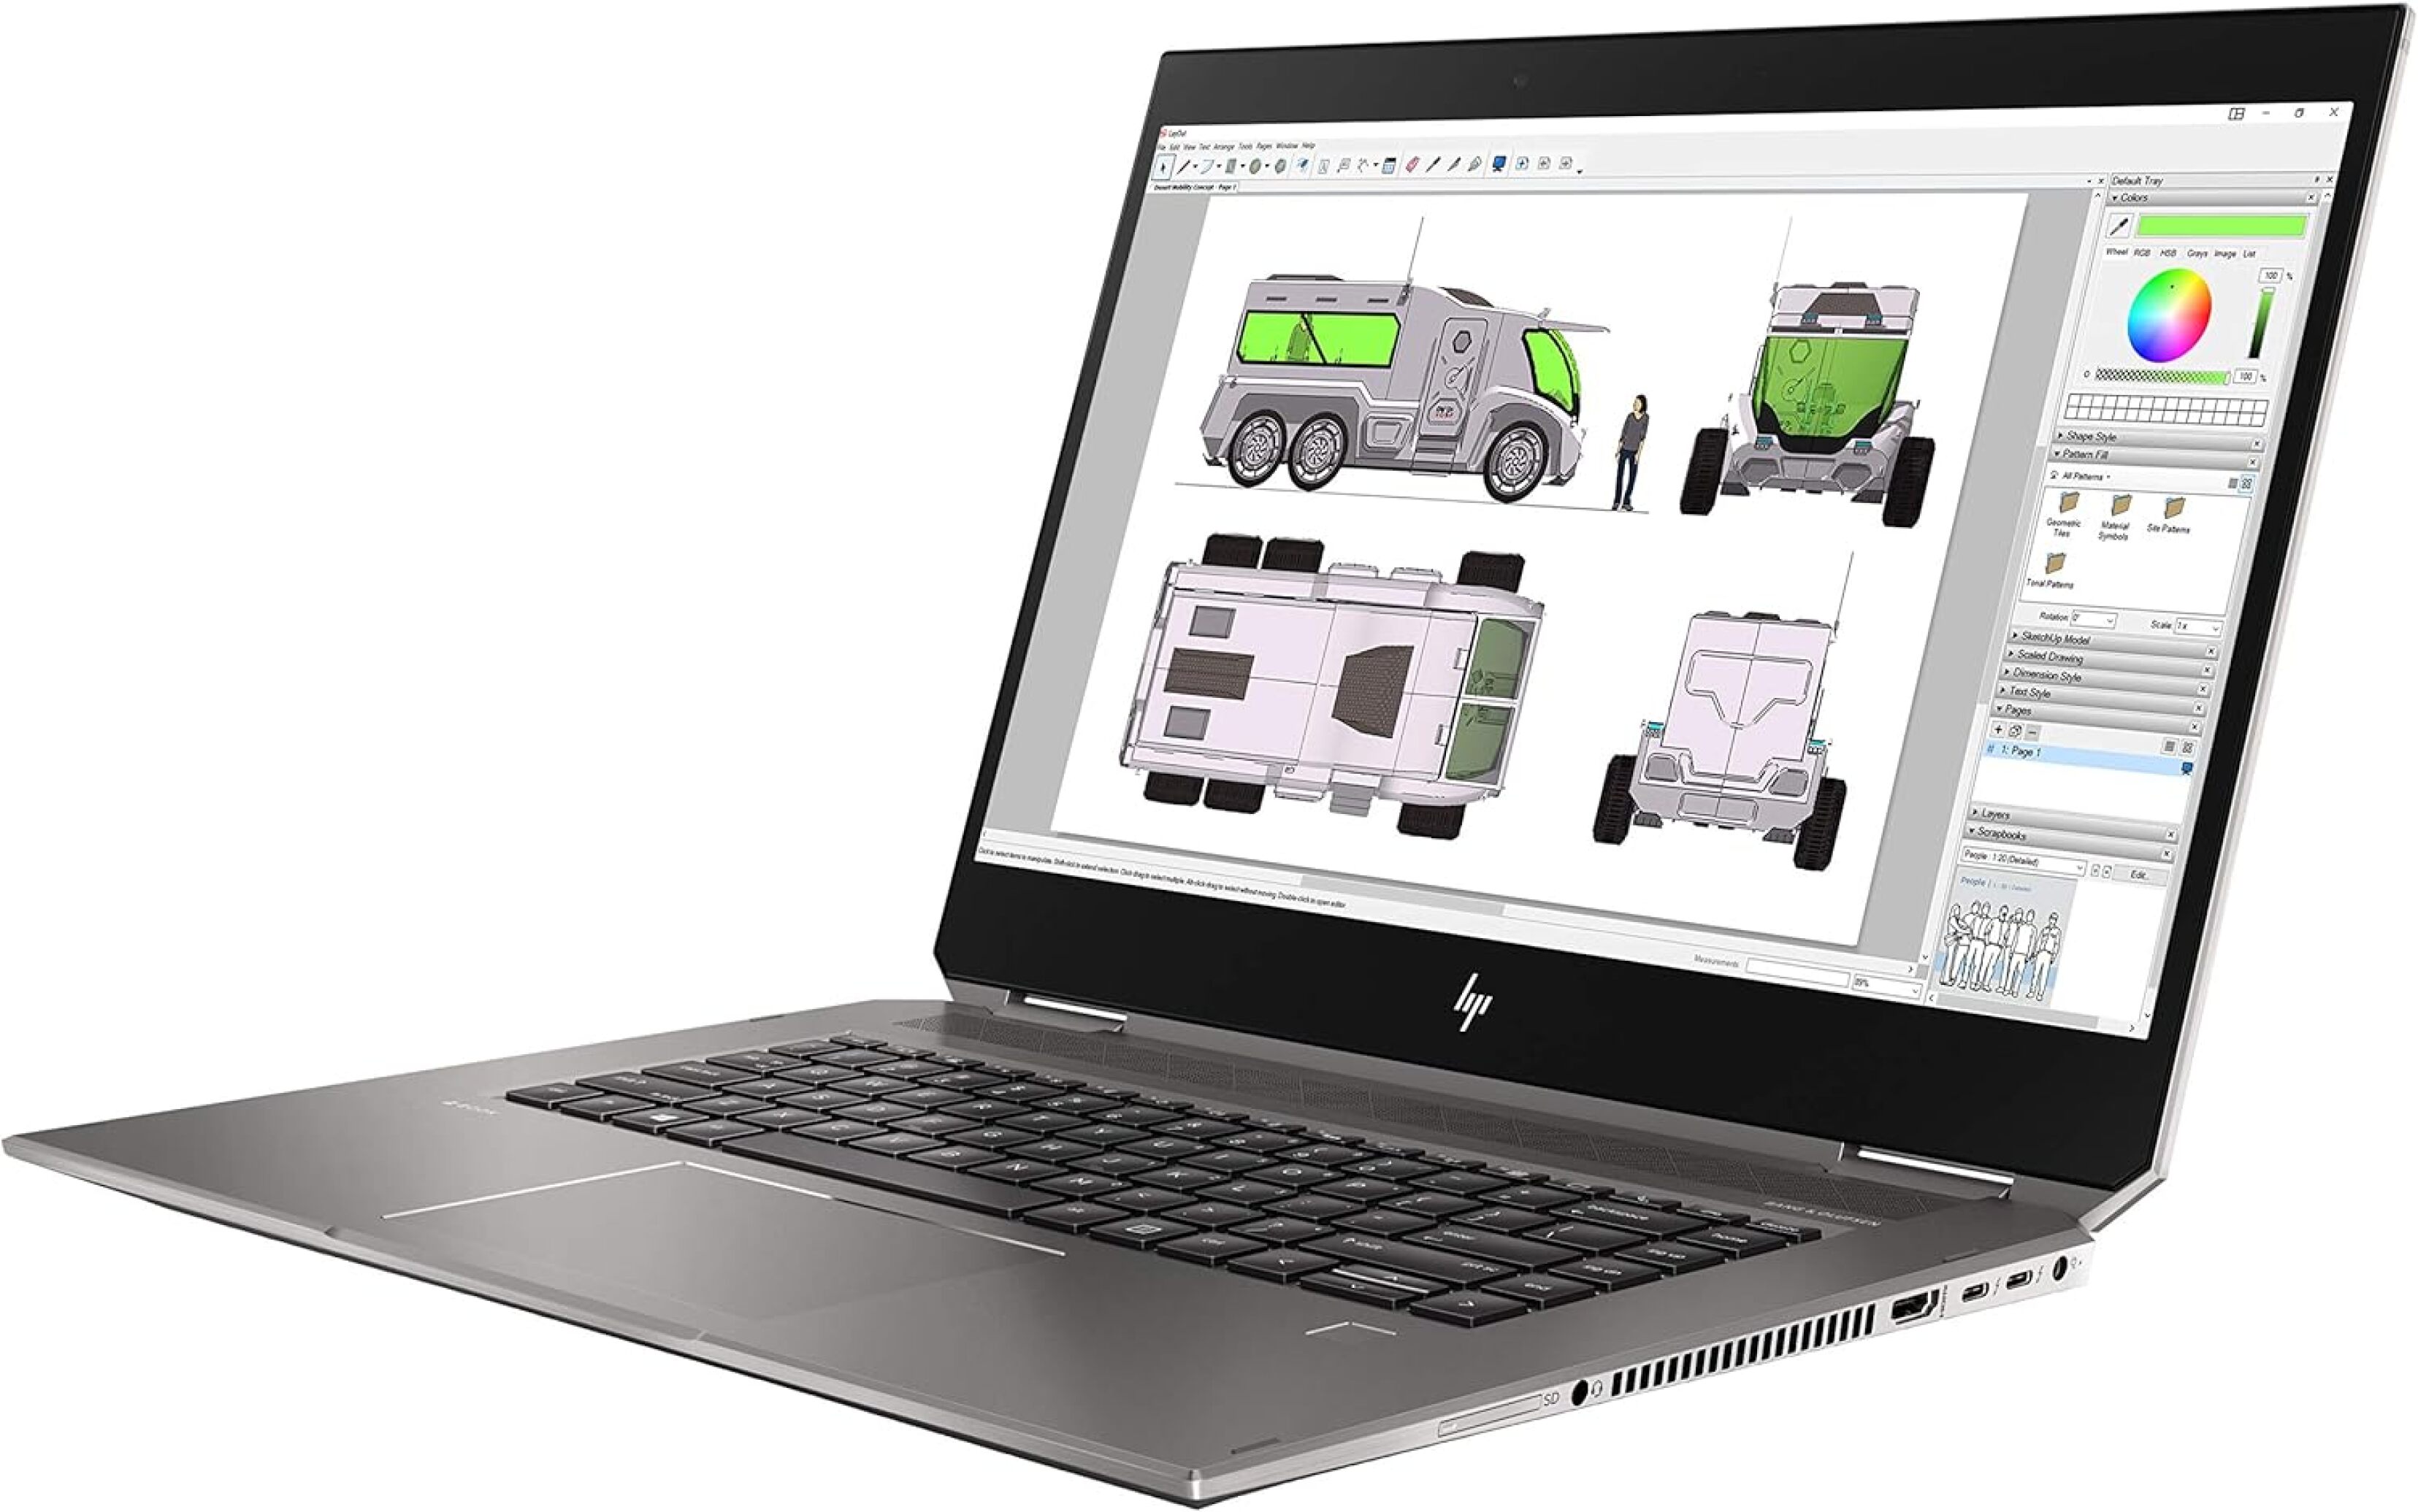  خرید،قیمت و مشخصات لپ تاپ 15.6 اینچی 360 درجه لمسی HP ZBook Studio 15 G5 X360 CORE i7 9750H | لاکچری لپ تاپ 